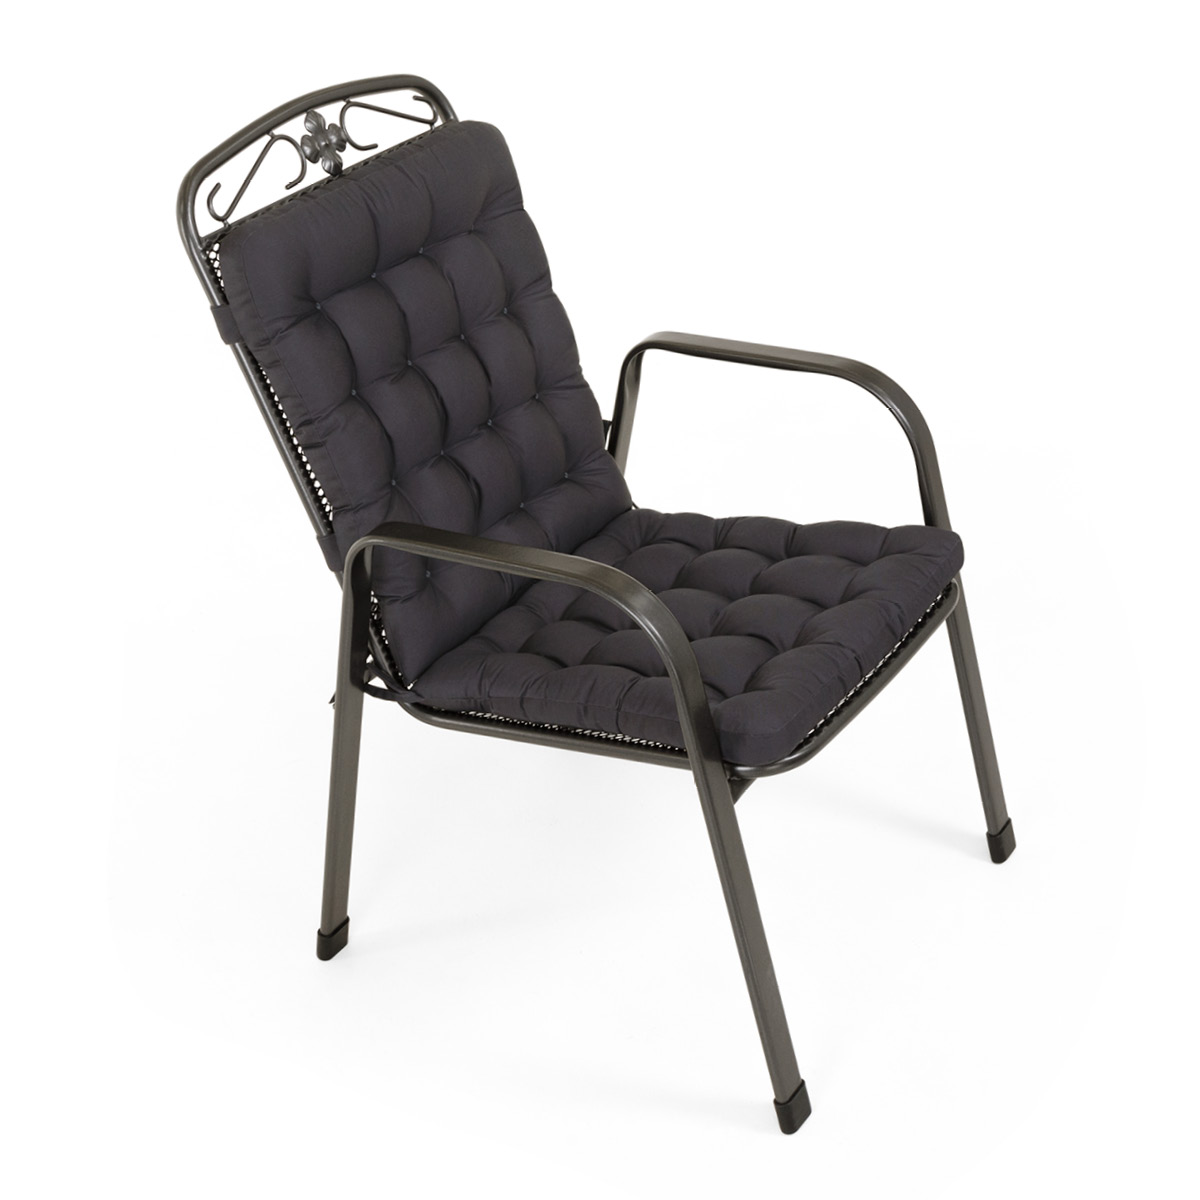 Sitzkissen mit Rückenlehne dunkelgrau | dicke Polsterung mit Schleifen und Bänder zur Befestigung an Gartenstuhl / Stapelstuhl | HAVE A SEAT Living 